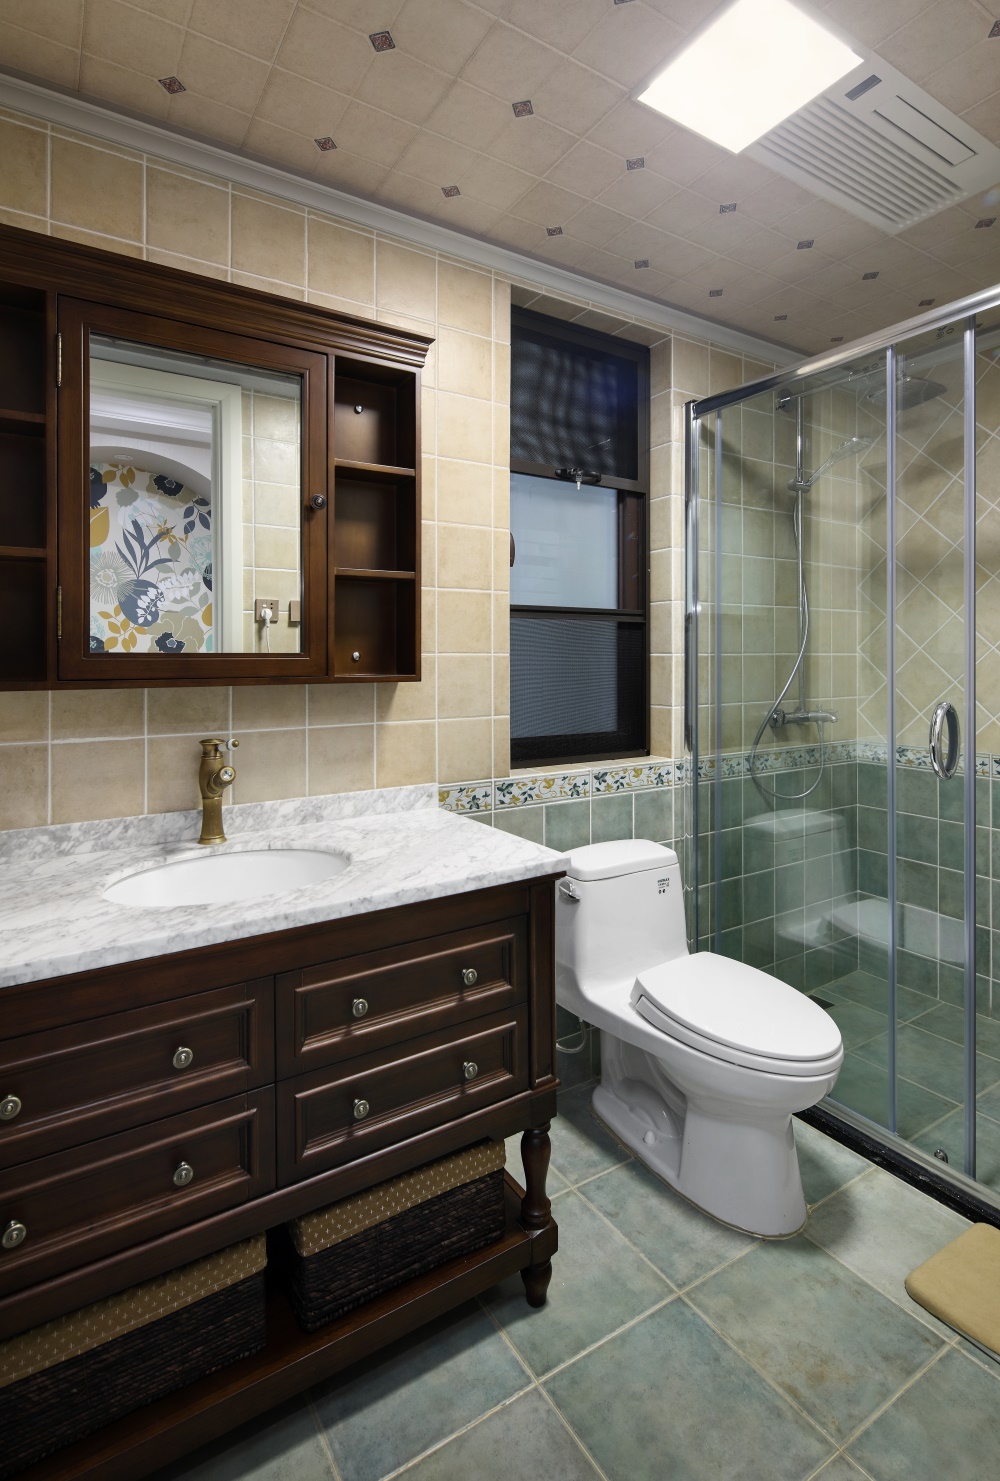 镜柜 洗手台 137㎡美式风格卫生间装修效果图 卫生间美式效果图 别墅